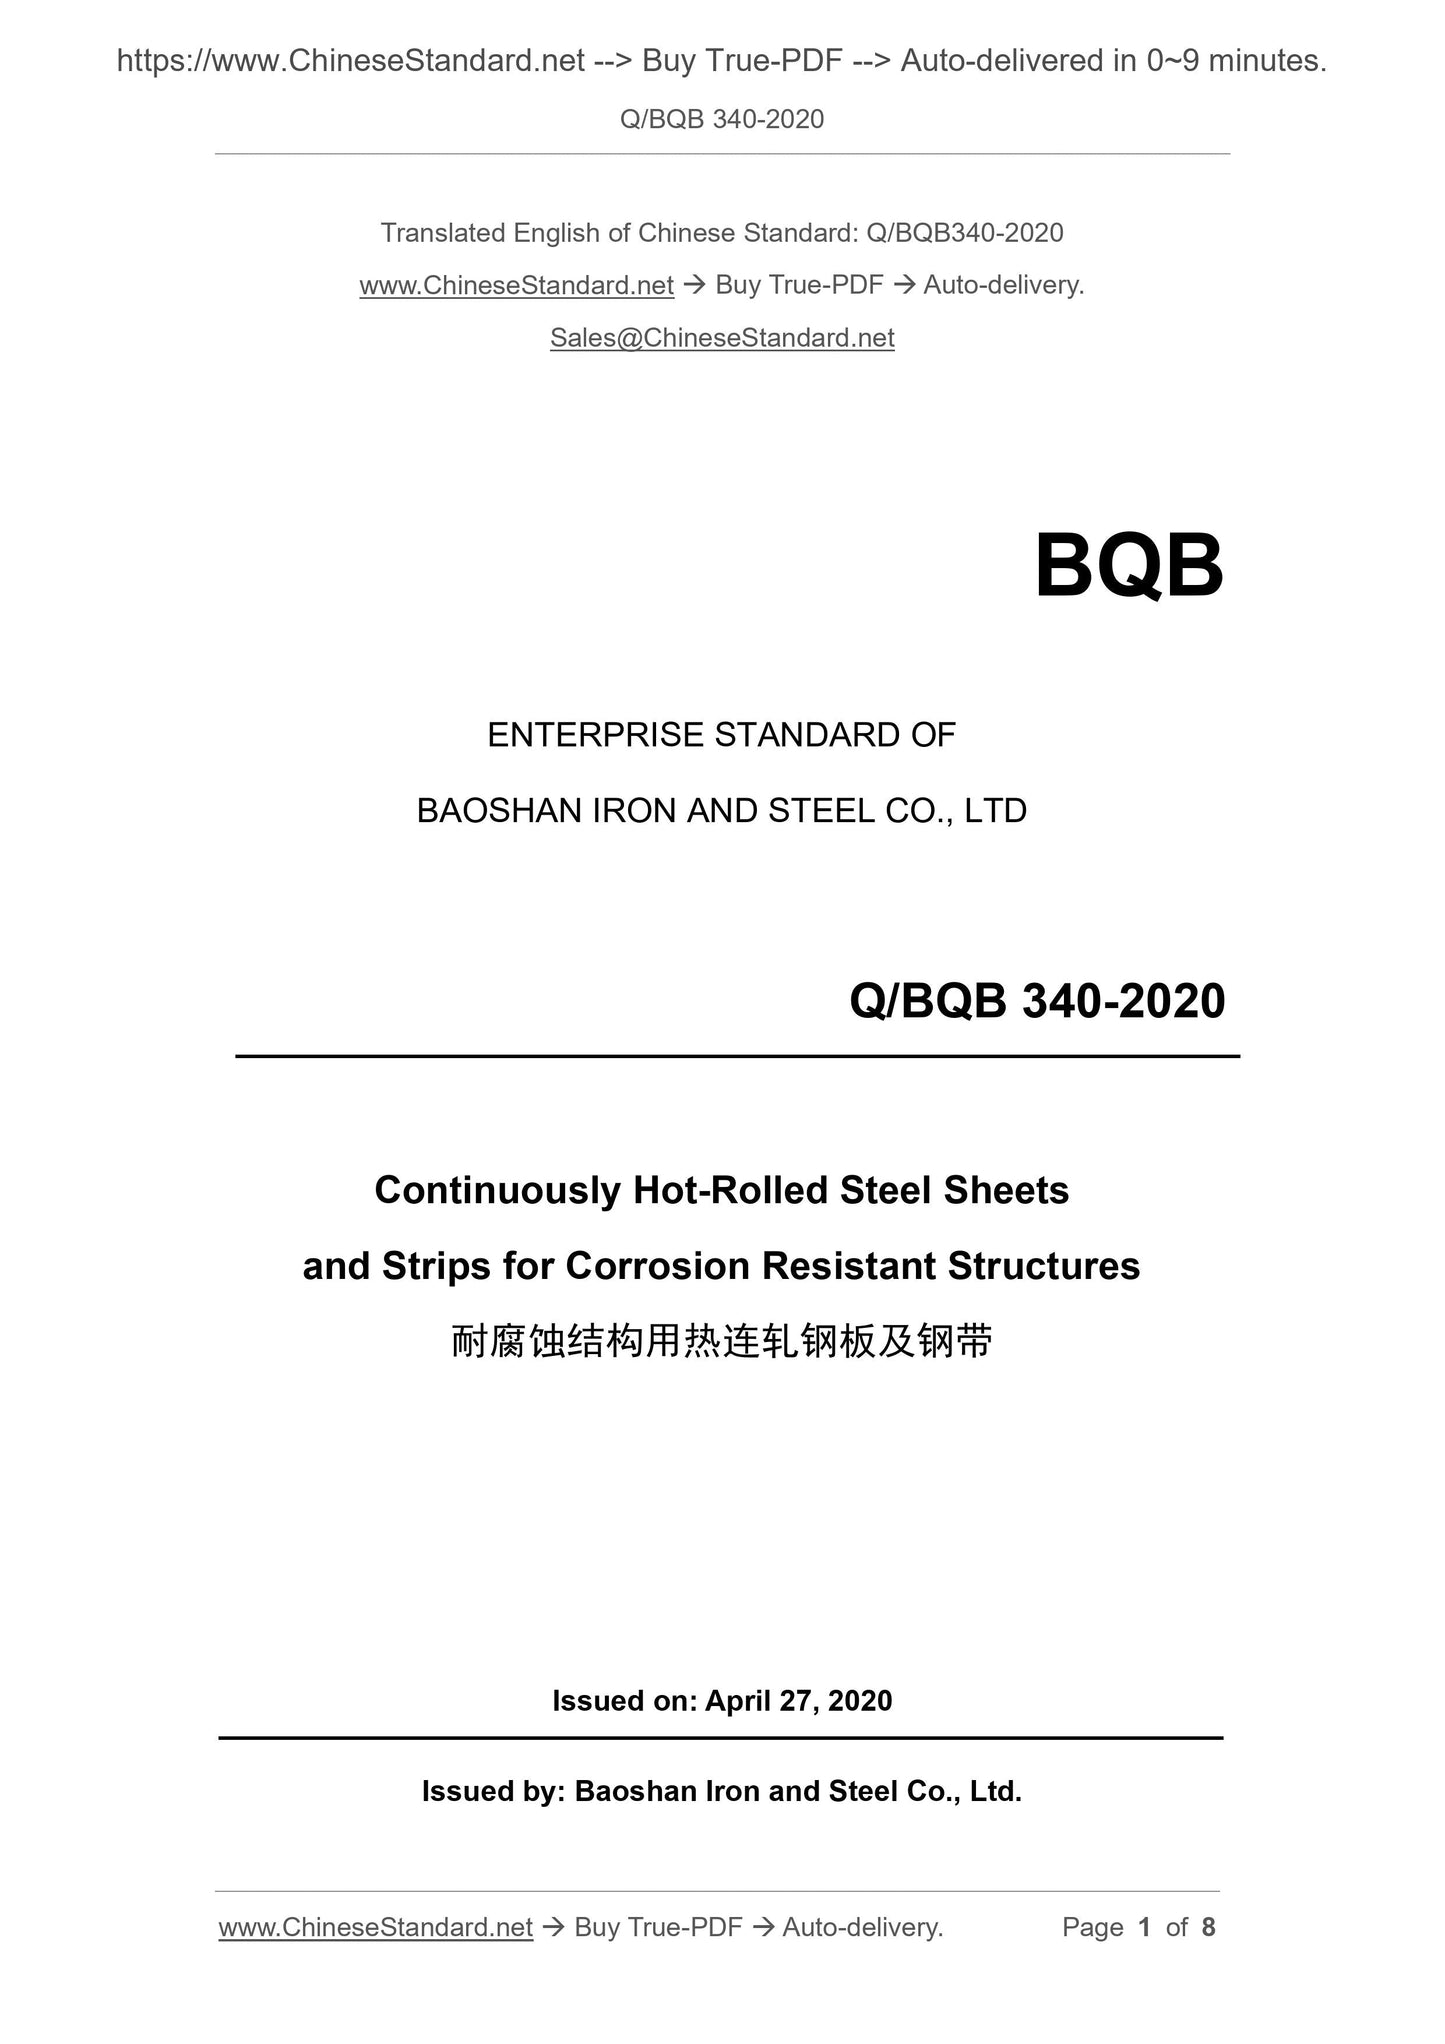 Q/BQB 340-2020 Page 1